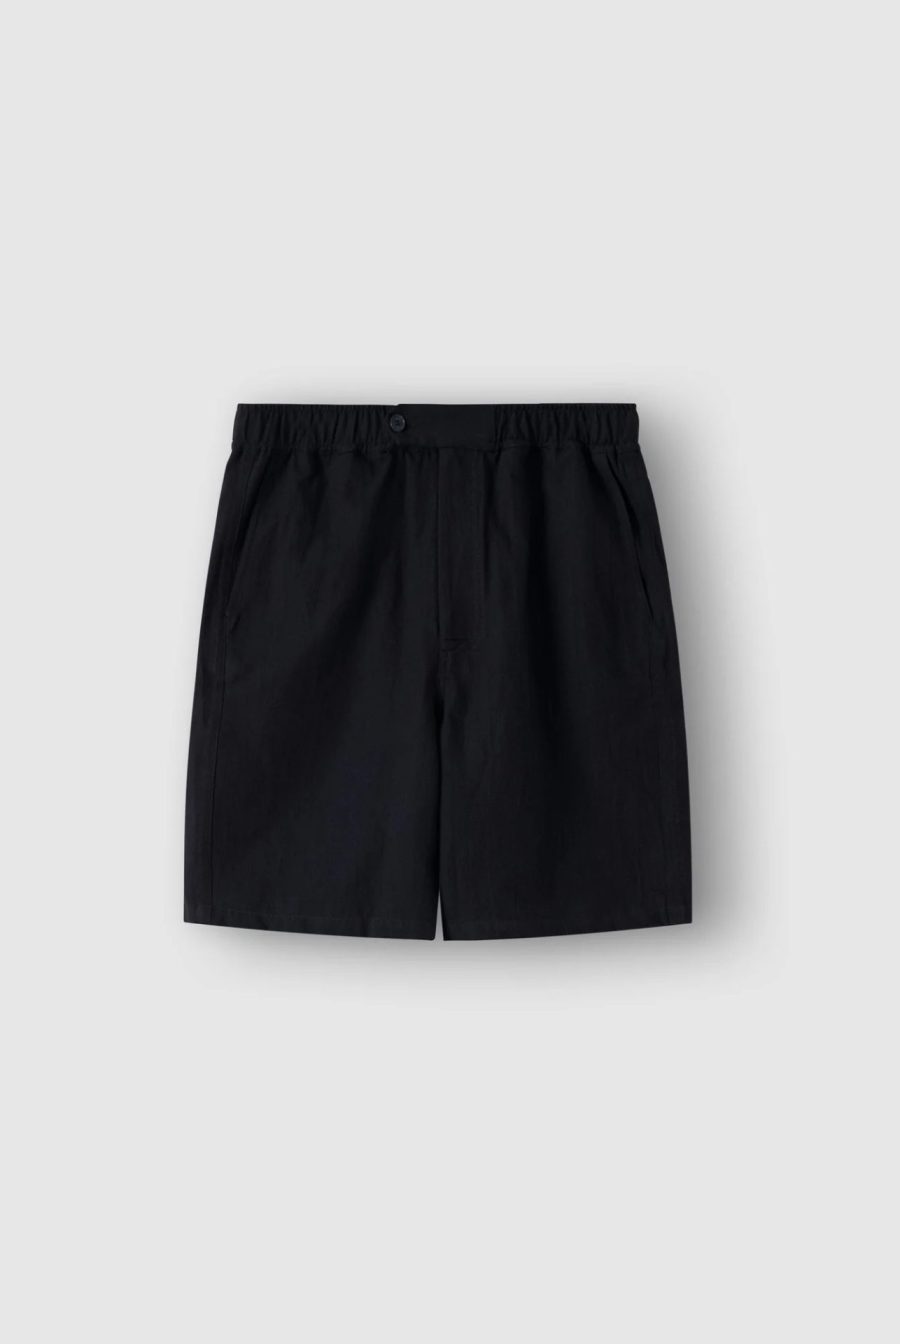 bandsome denim shorts black